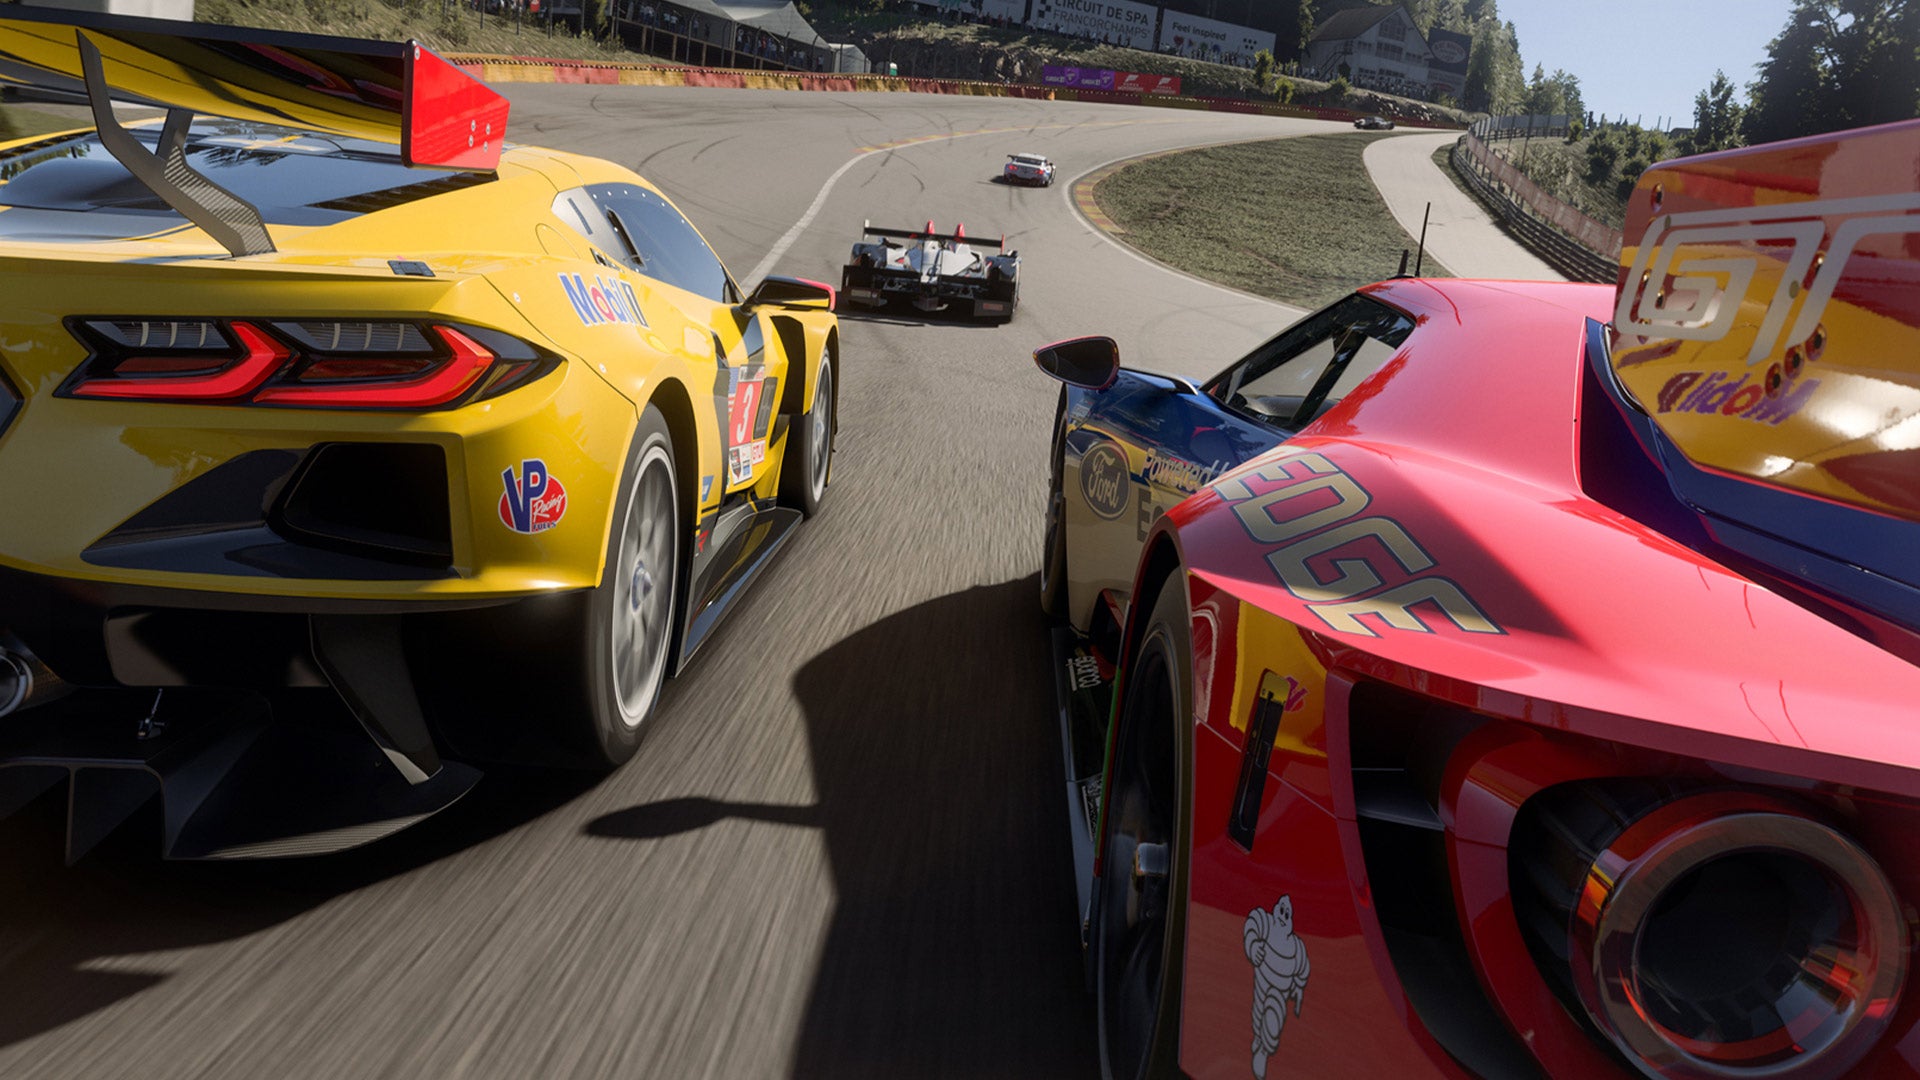 De volgende update voor Forza Motorsport, die deze week verschijnt, past de "Safety Rating" aan.